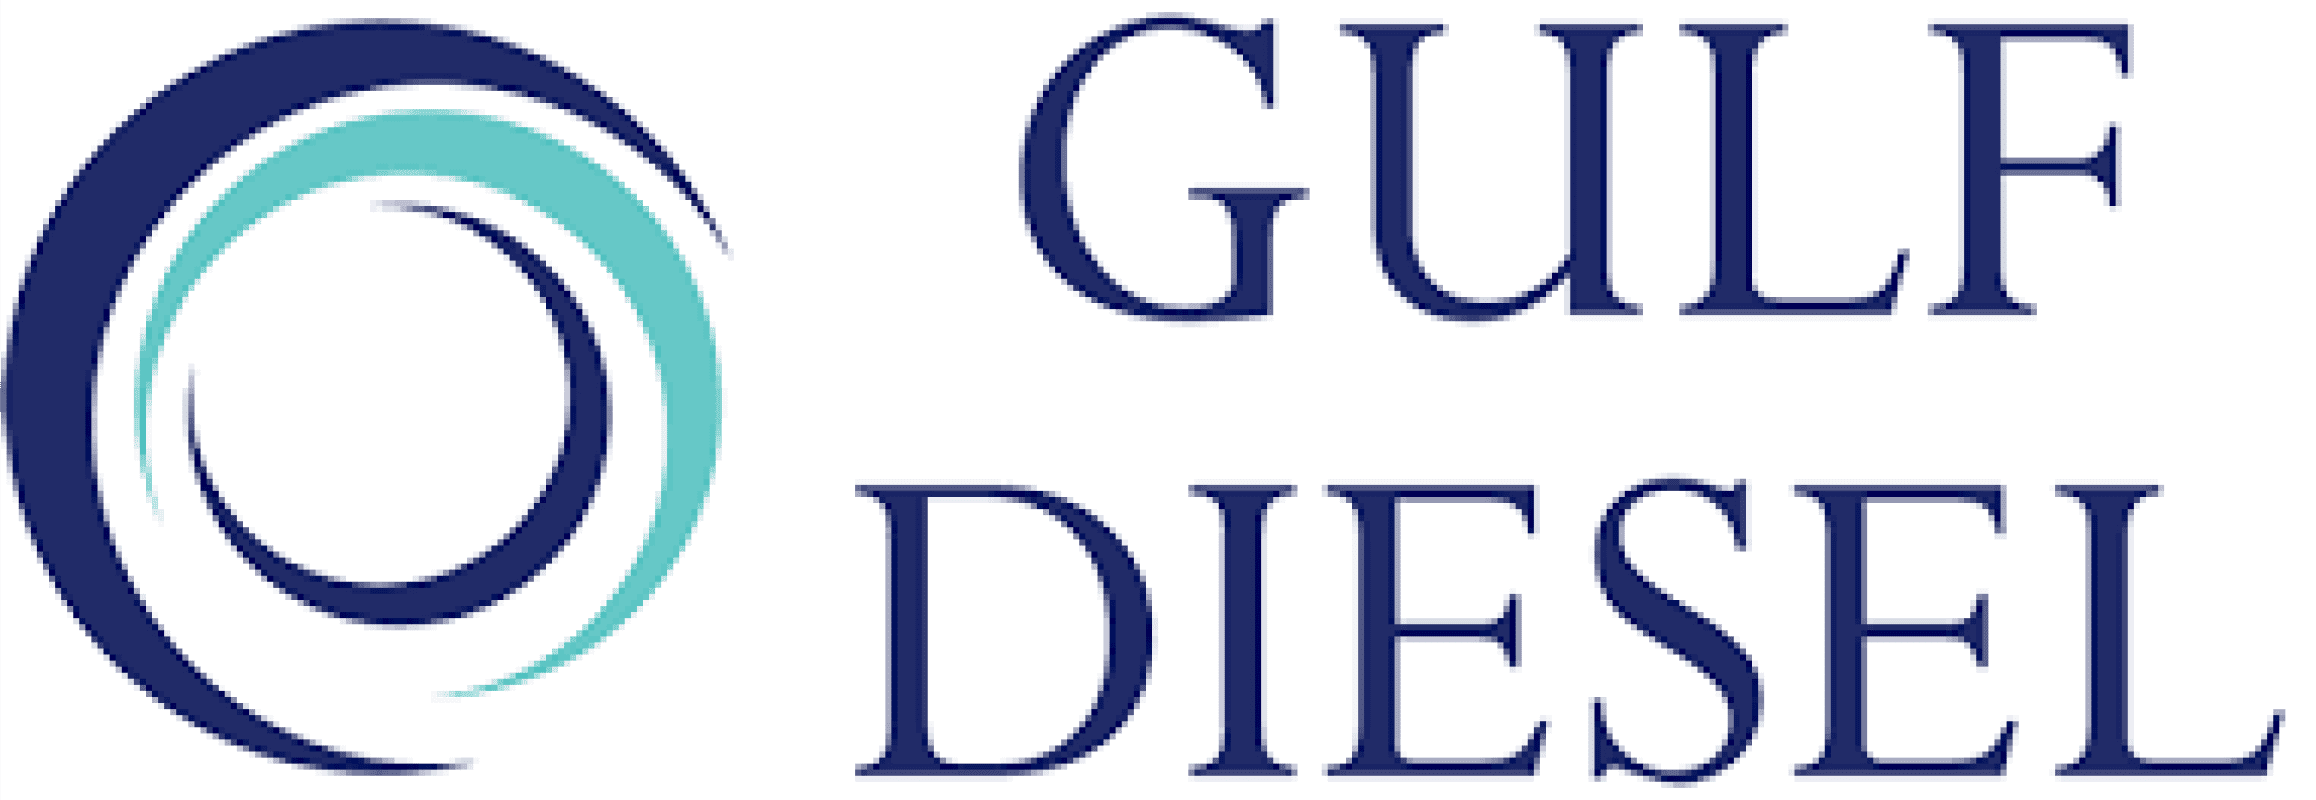 Gulf Diesel